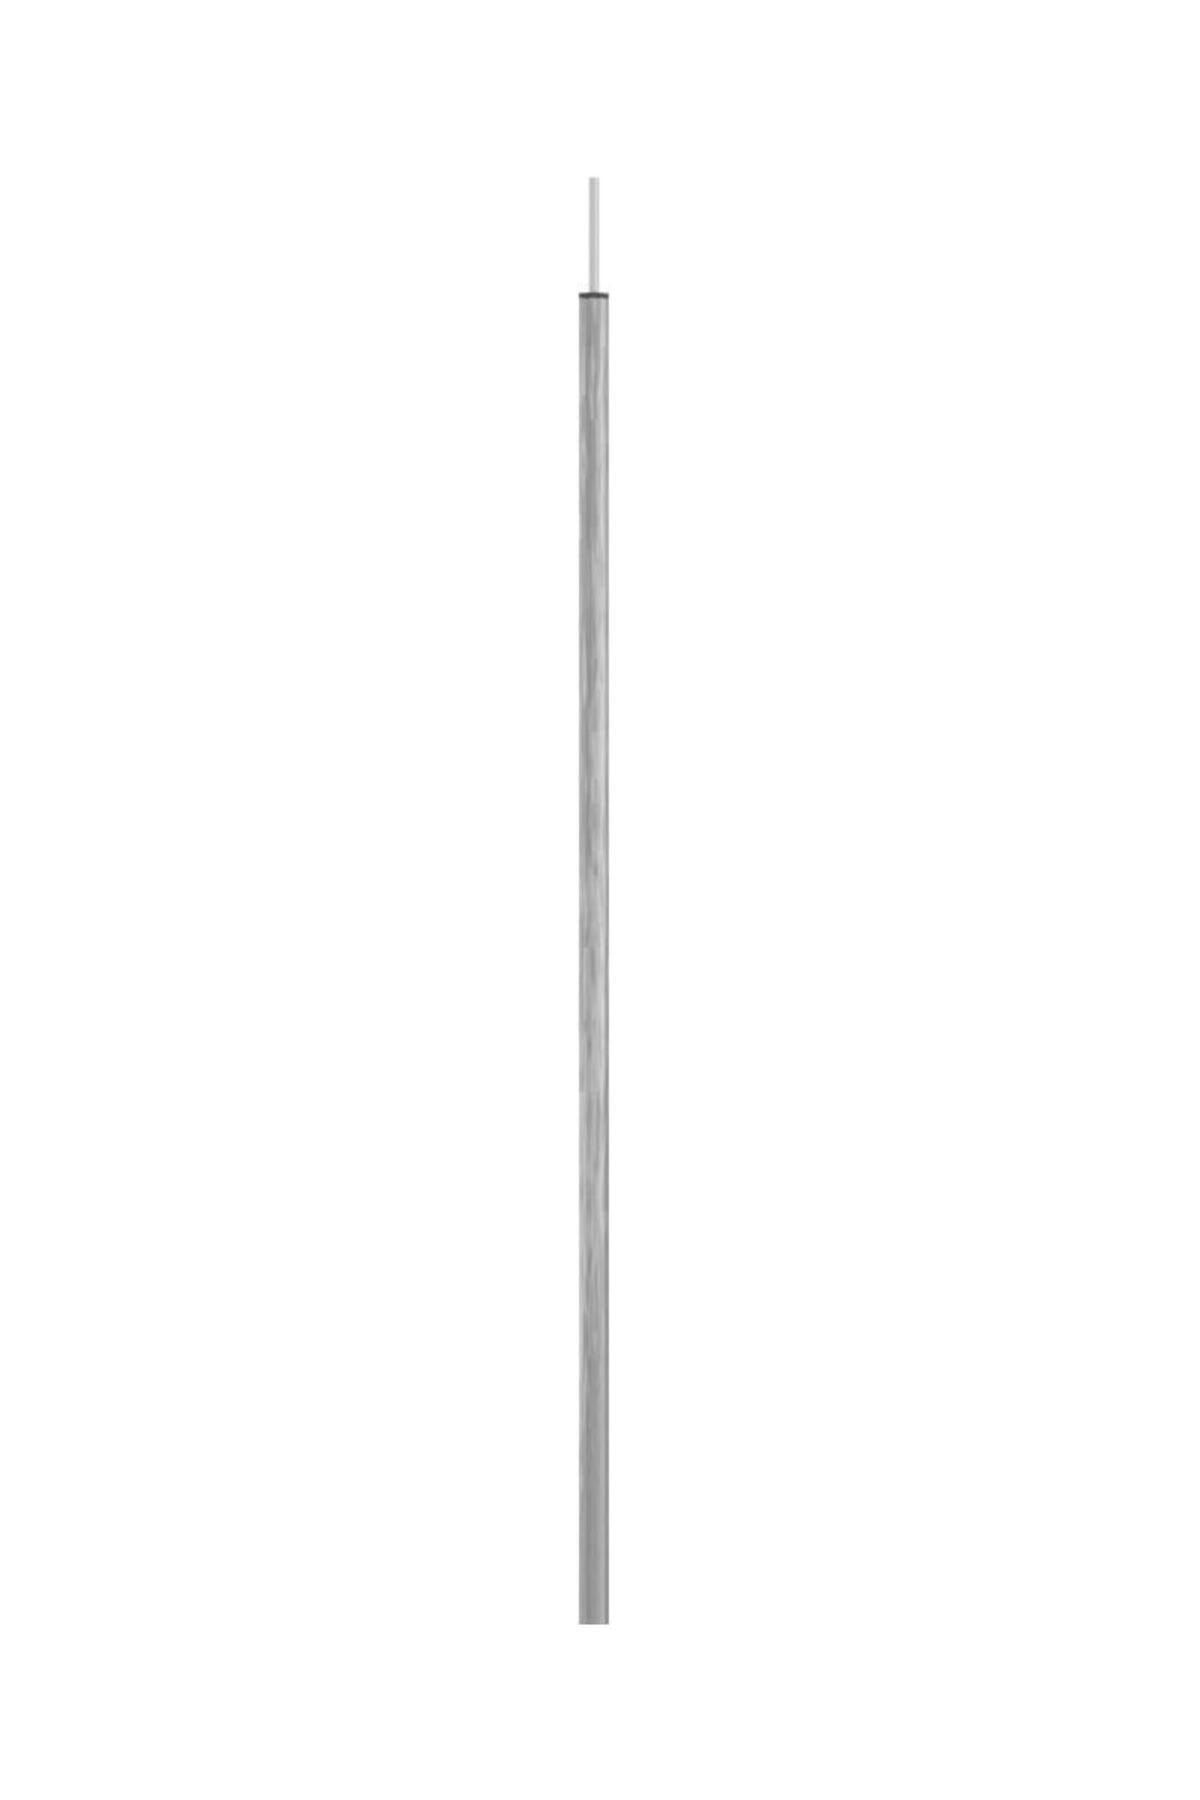 Nurgaz Çadır Direği 200cm [Çadır | Tarp | Tente | Branda Direği] Metalik renk